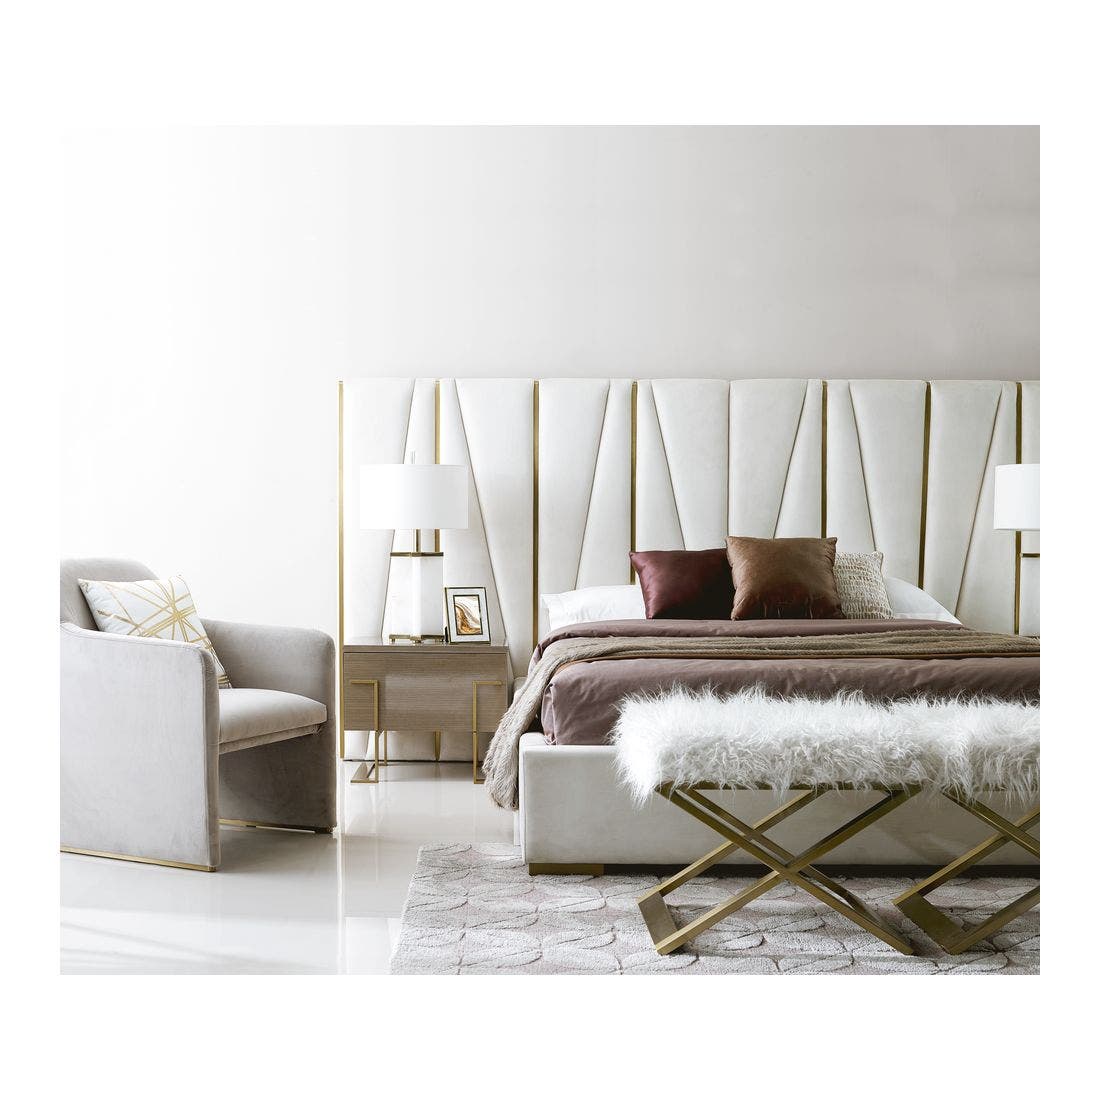 19173616-nitoya-furniture-bedroom-furniture-beds-31